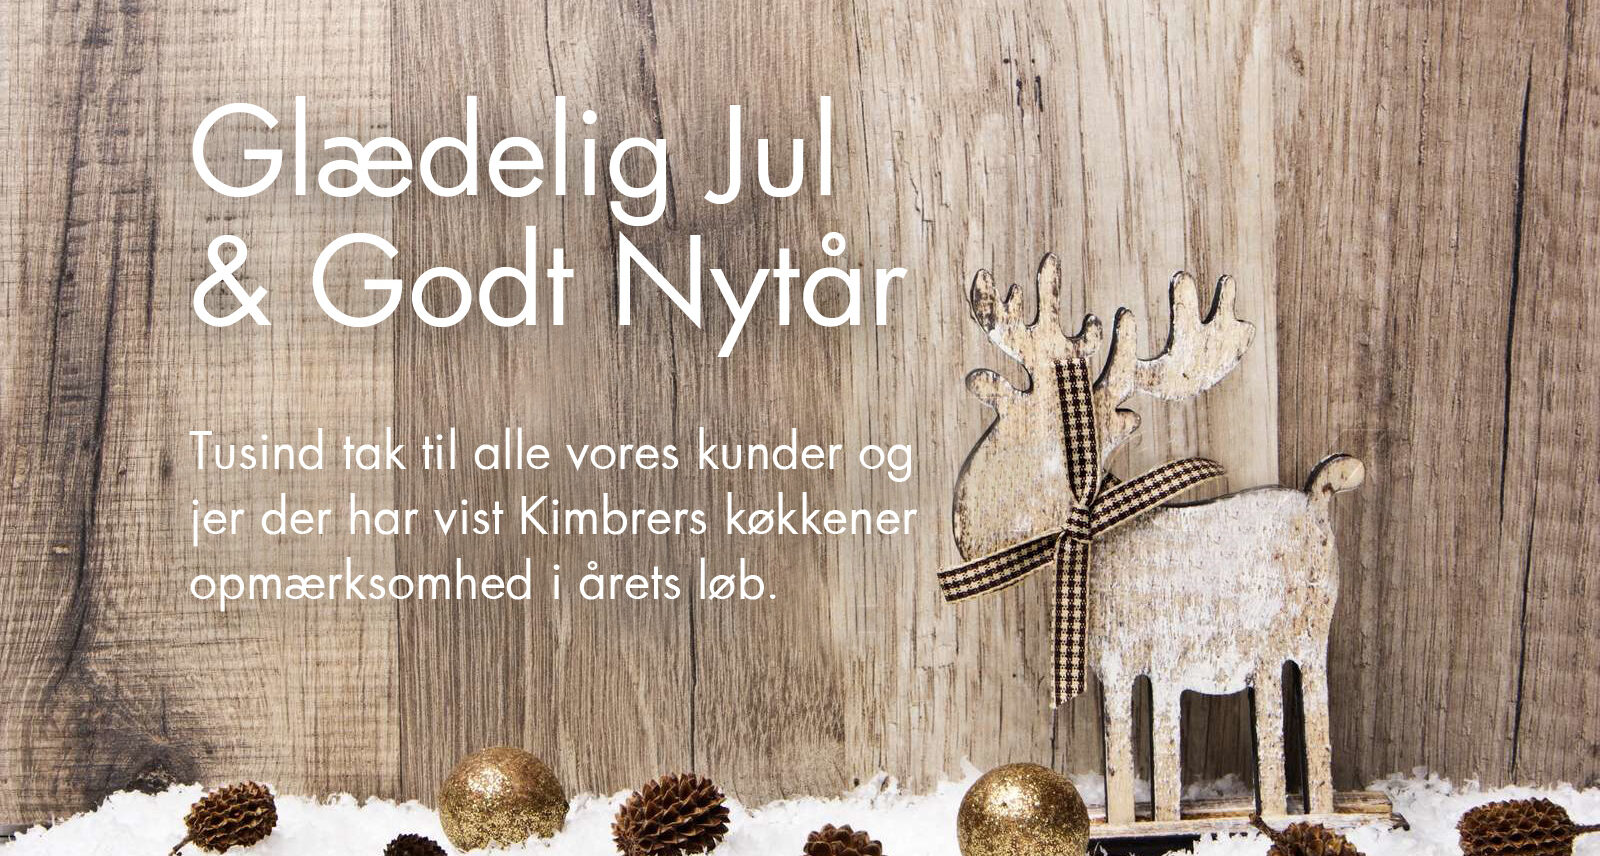 Kimbrer Lines fra Farsø siger Glædelig Jul og Godt Nytår